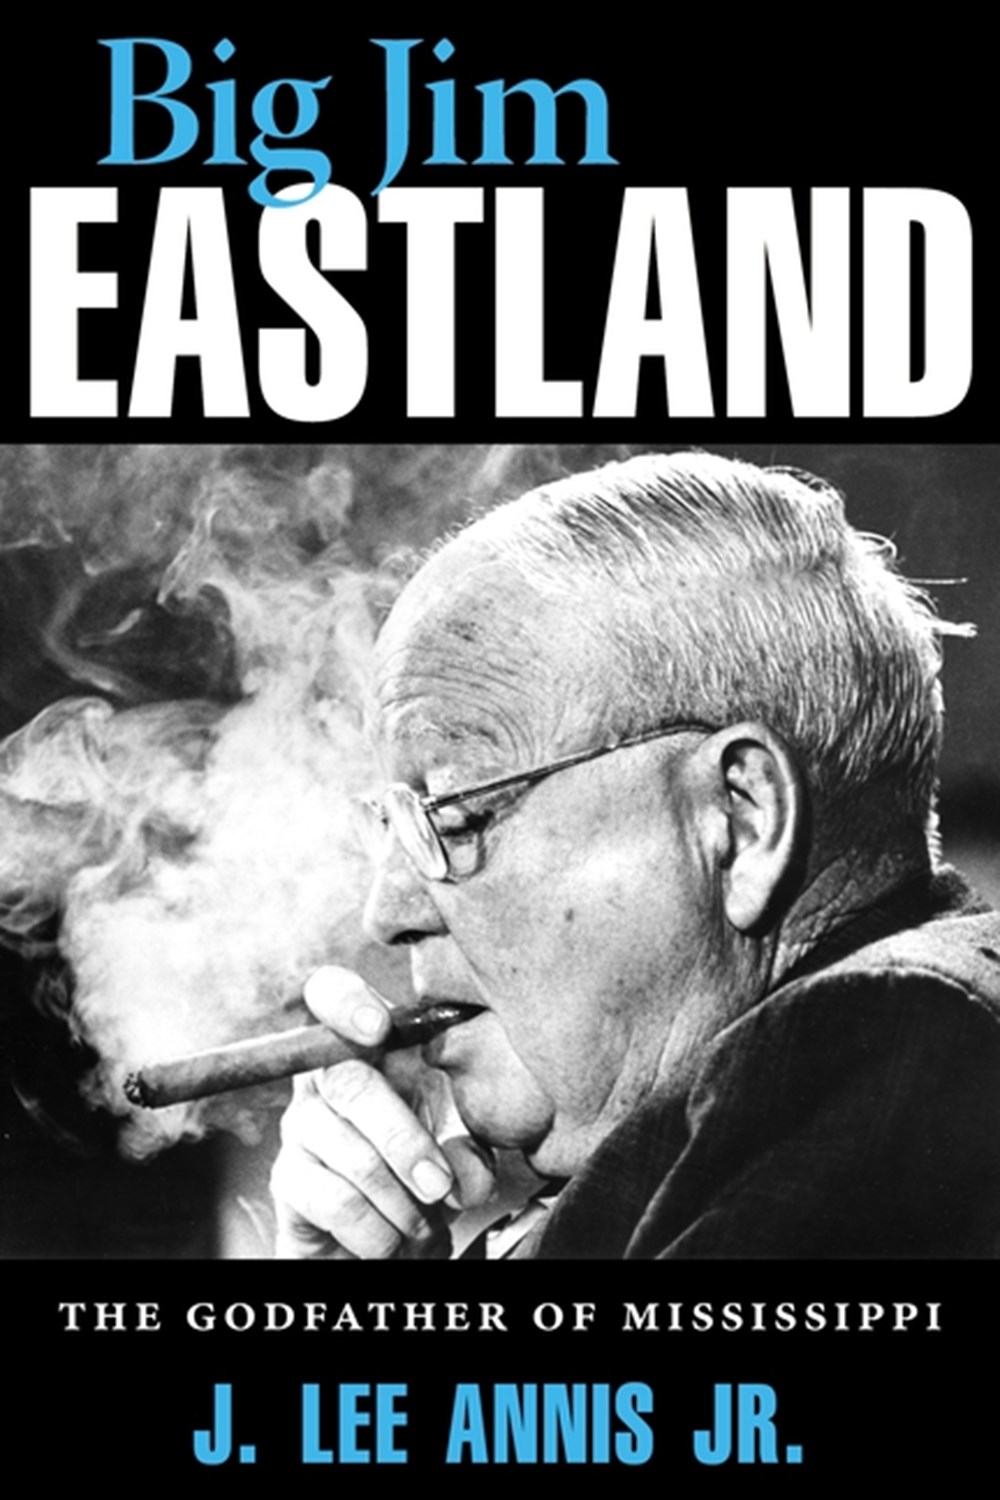 Big Jim Eastland The Godfather of Mississippi